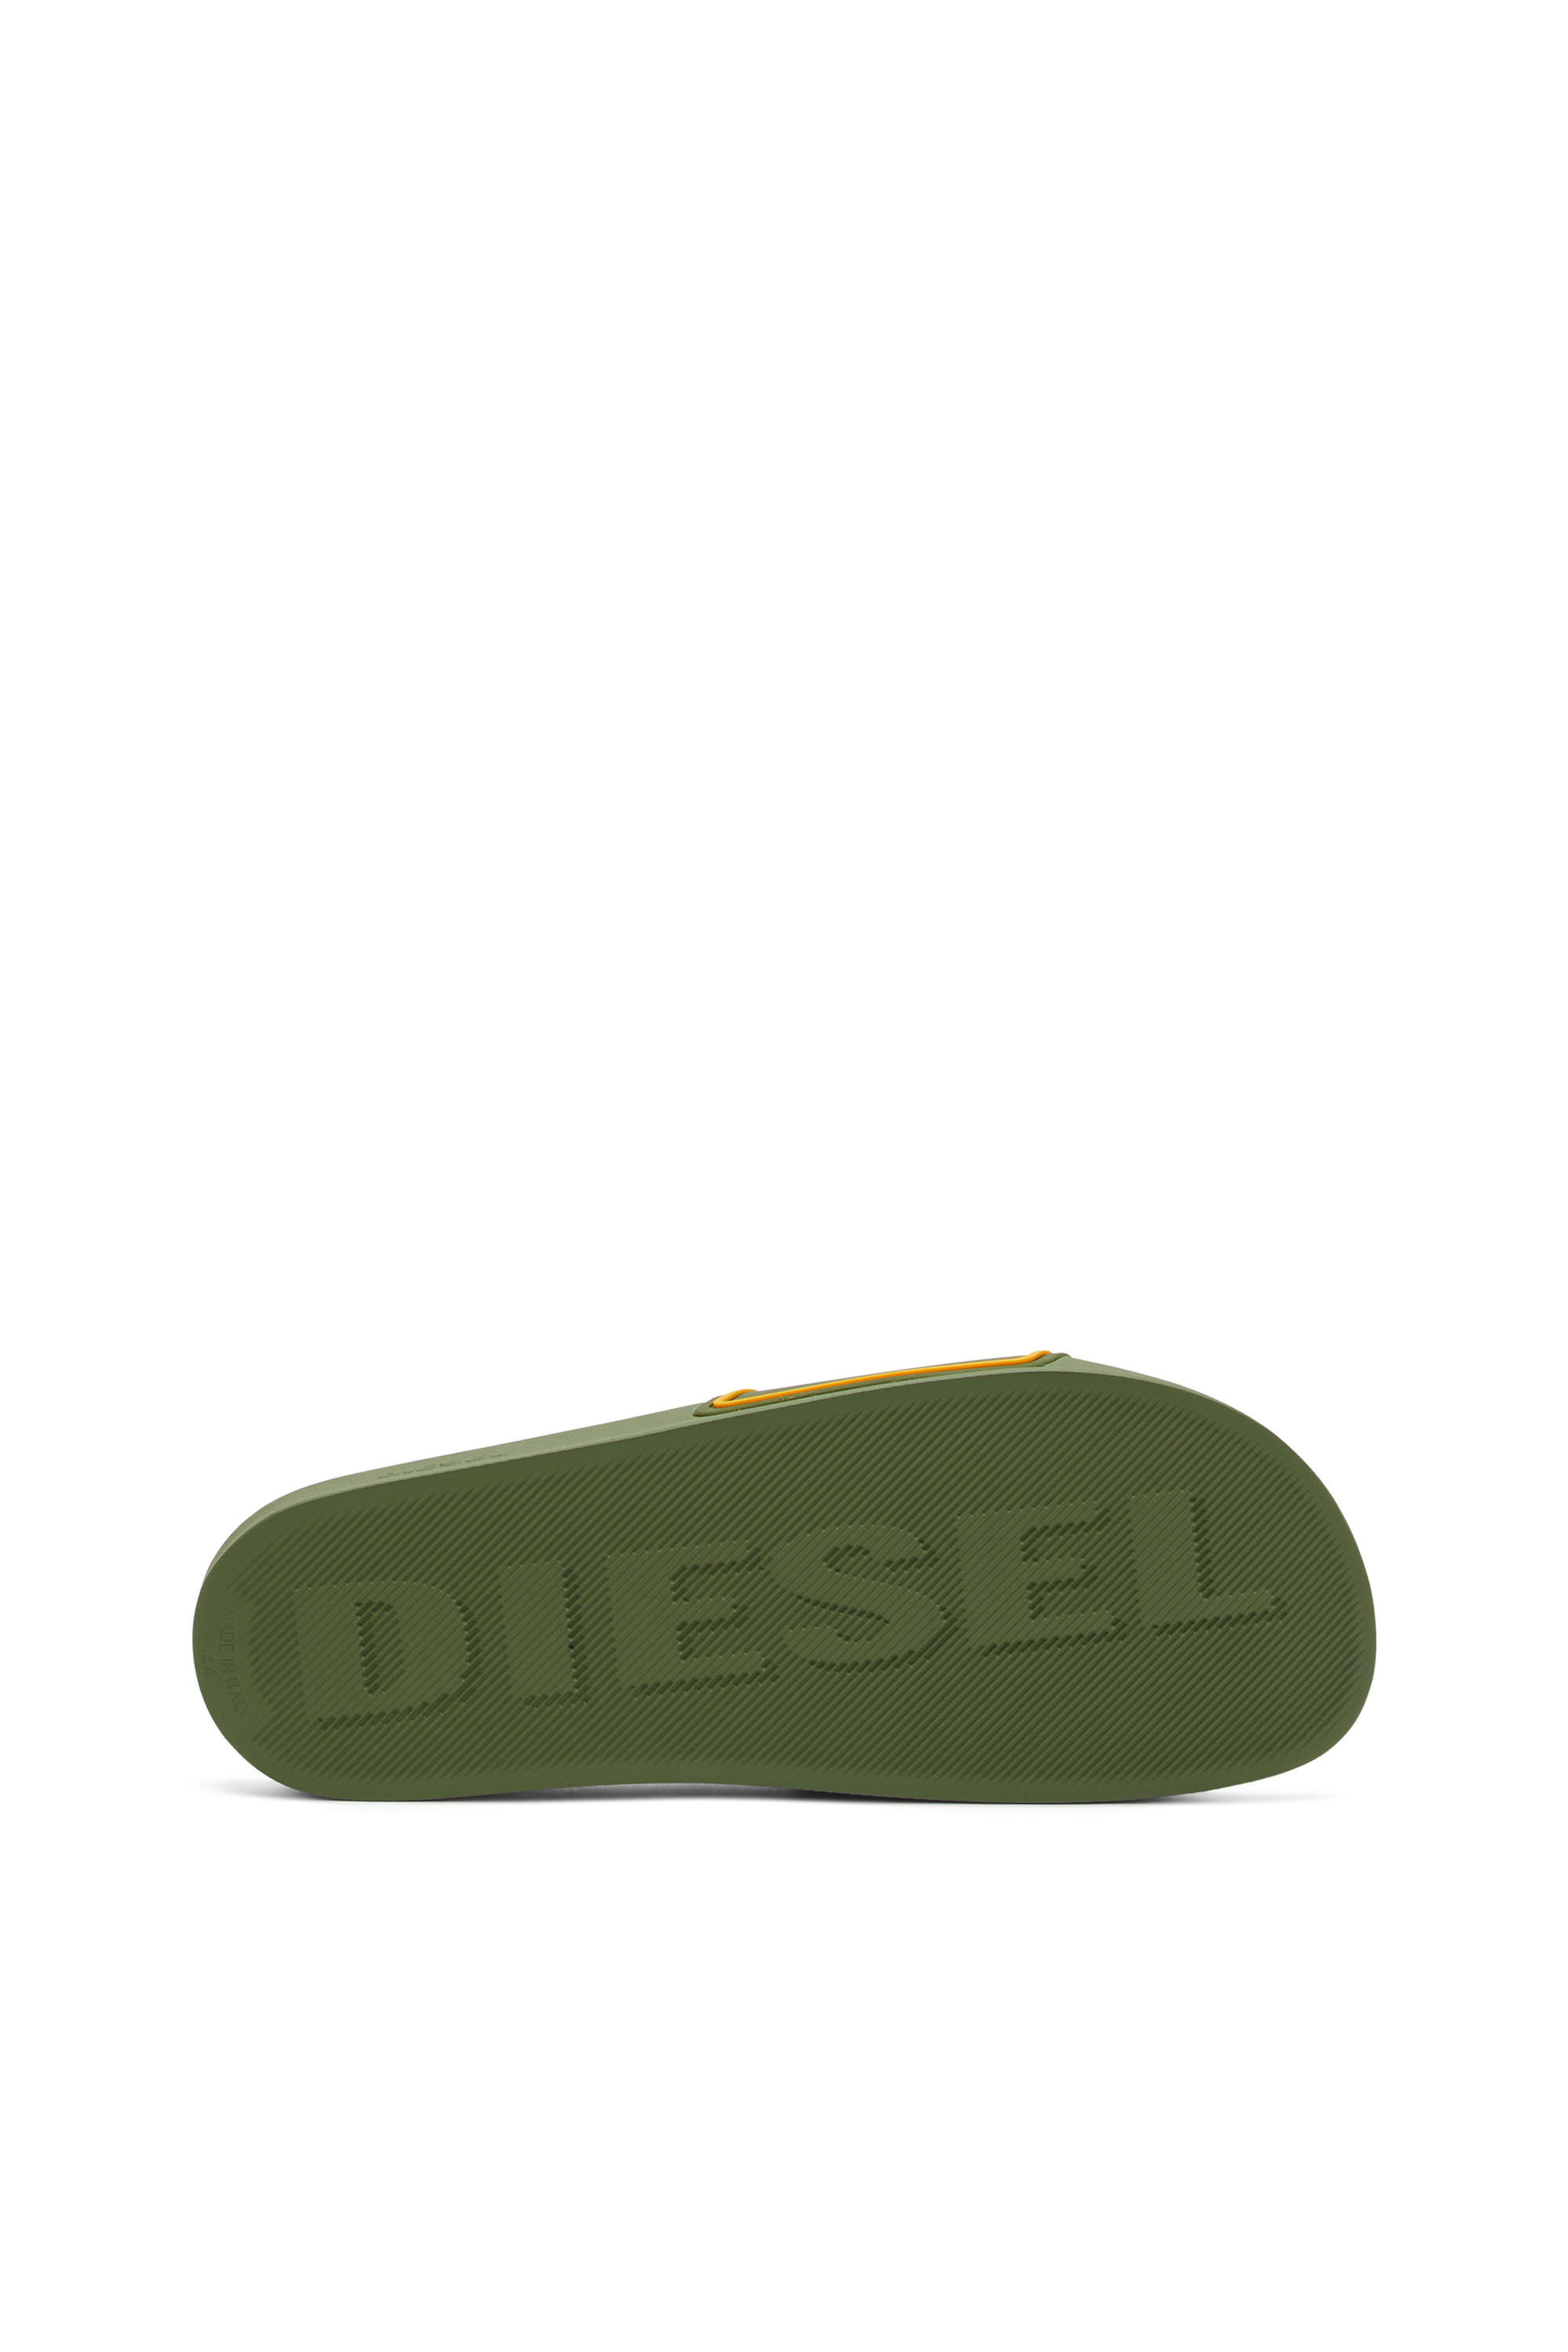 Diesel - SA-MAYEMI CC, Green - Image 5